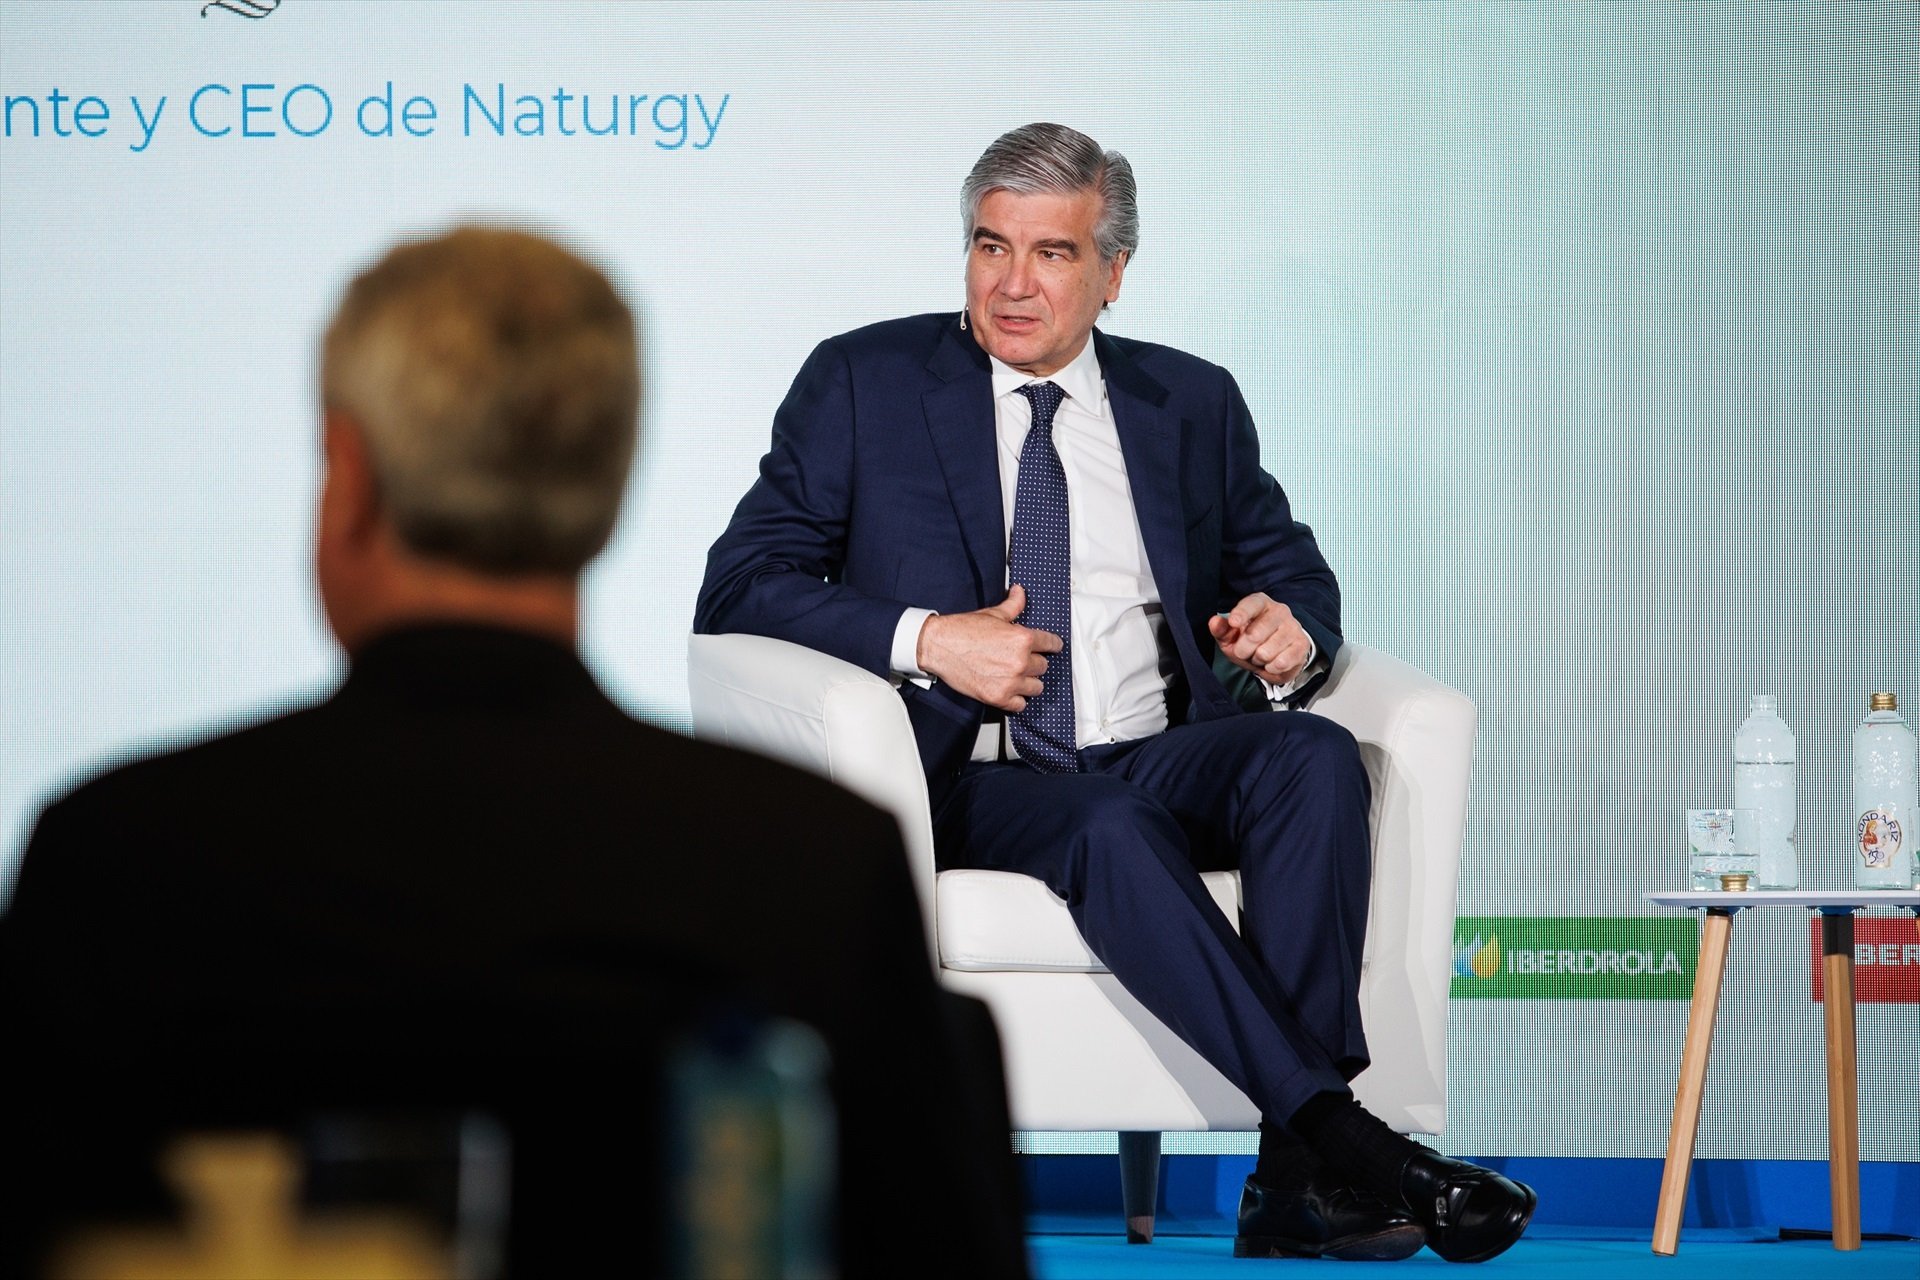 Los accionistas de Naturgy muestran su apoyo total a Reynés tras el 'no' de Orrantia a ser CEO